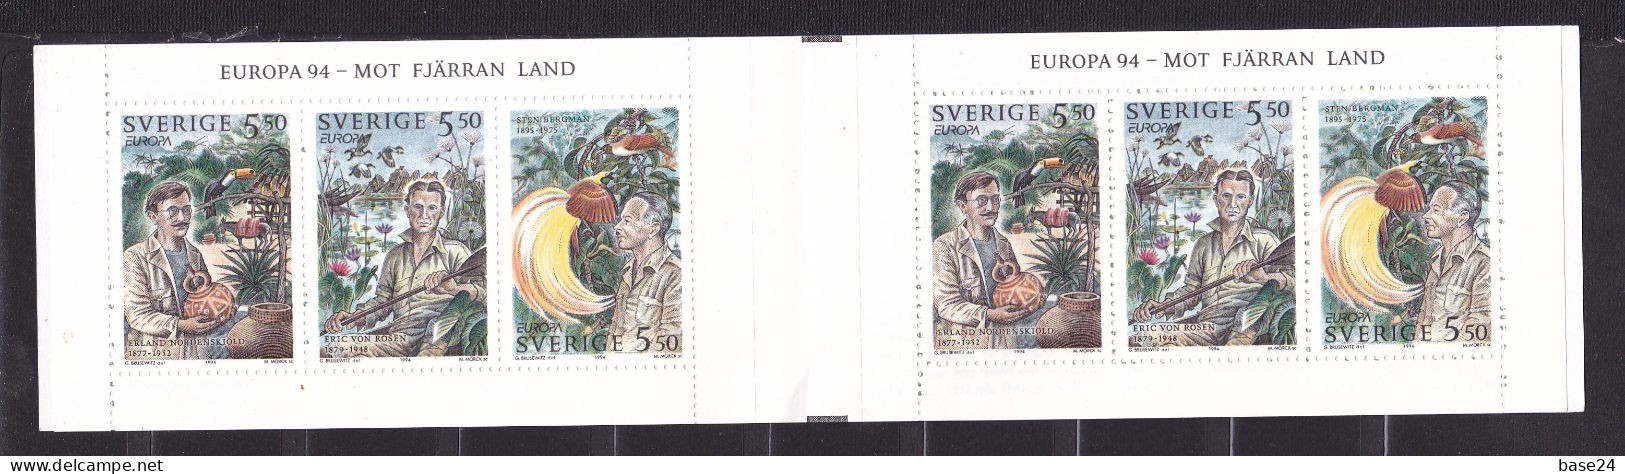 1994 Svezia Sweden EUROPA CEPT EUROPE Libretto MNH** Grandi Scoperte, Great Discoveries Booklet - 1994